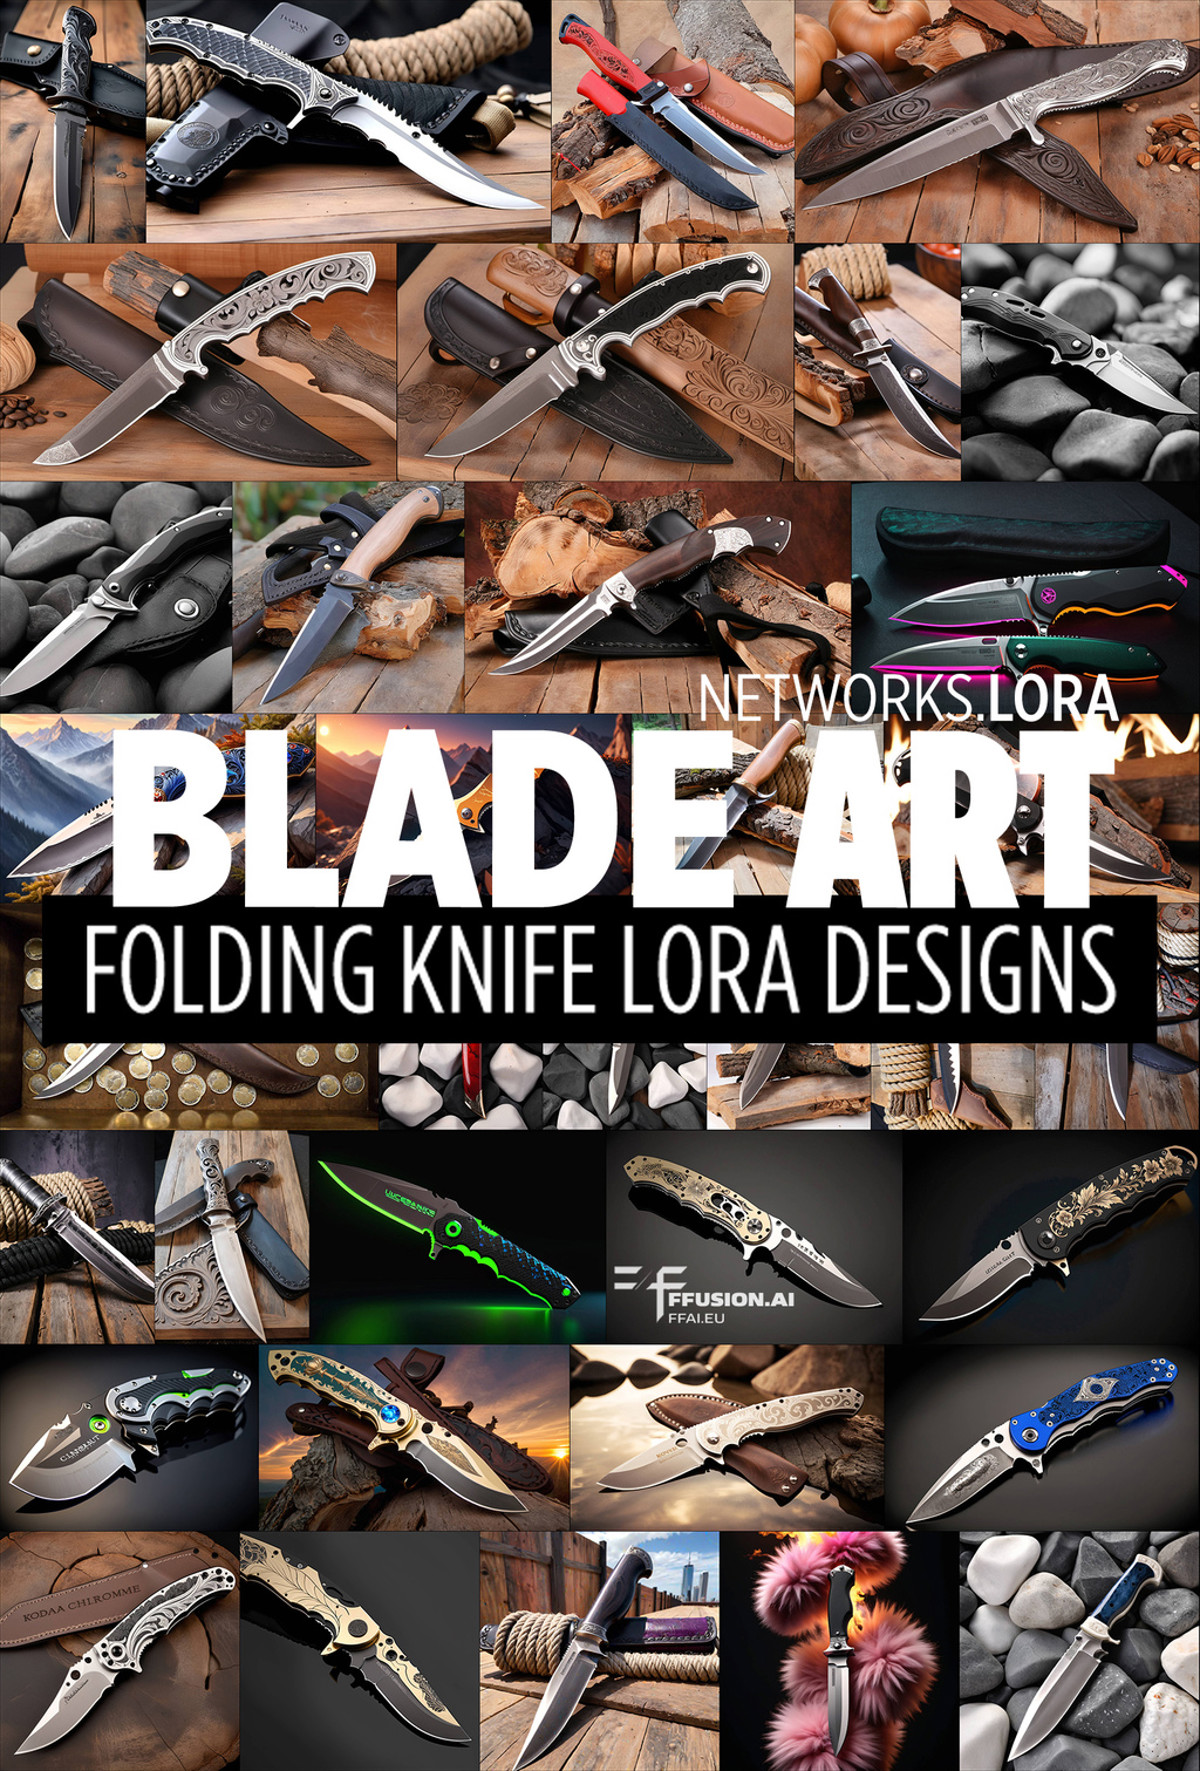 <lora:FF-Knives-XL-Cr2-v0163:1>